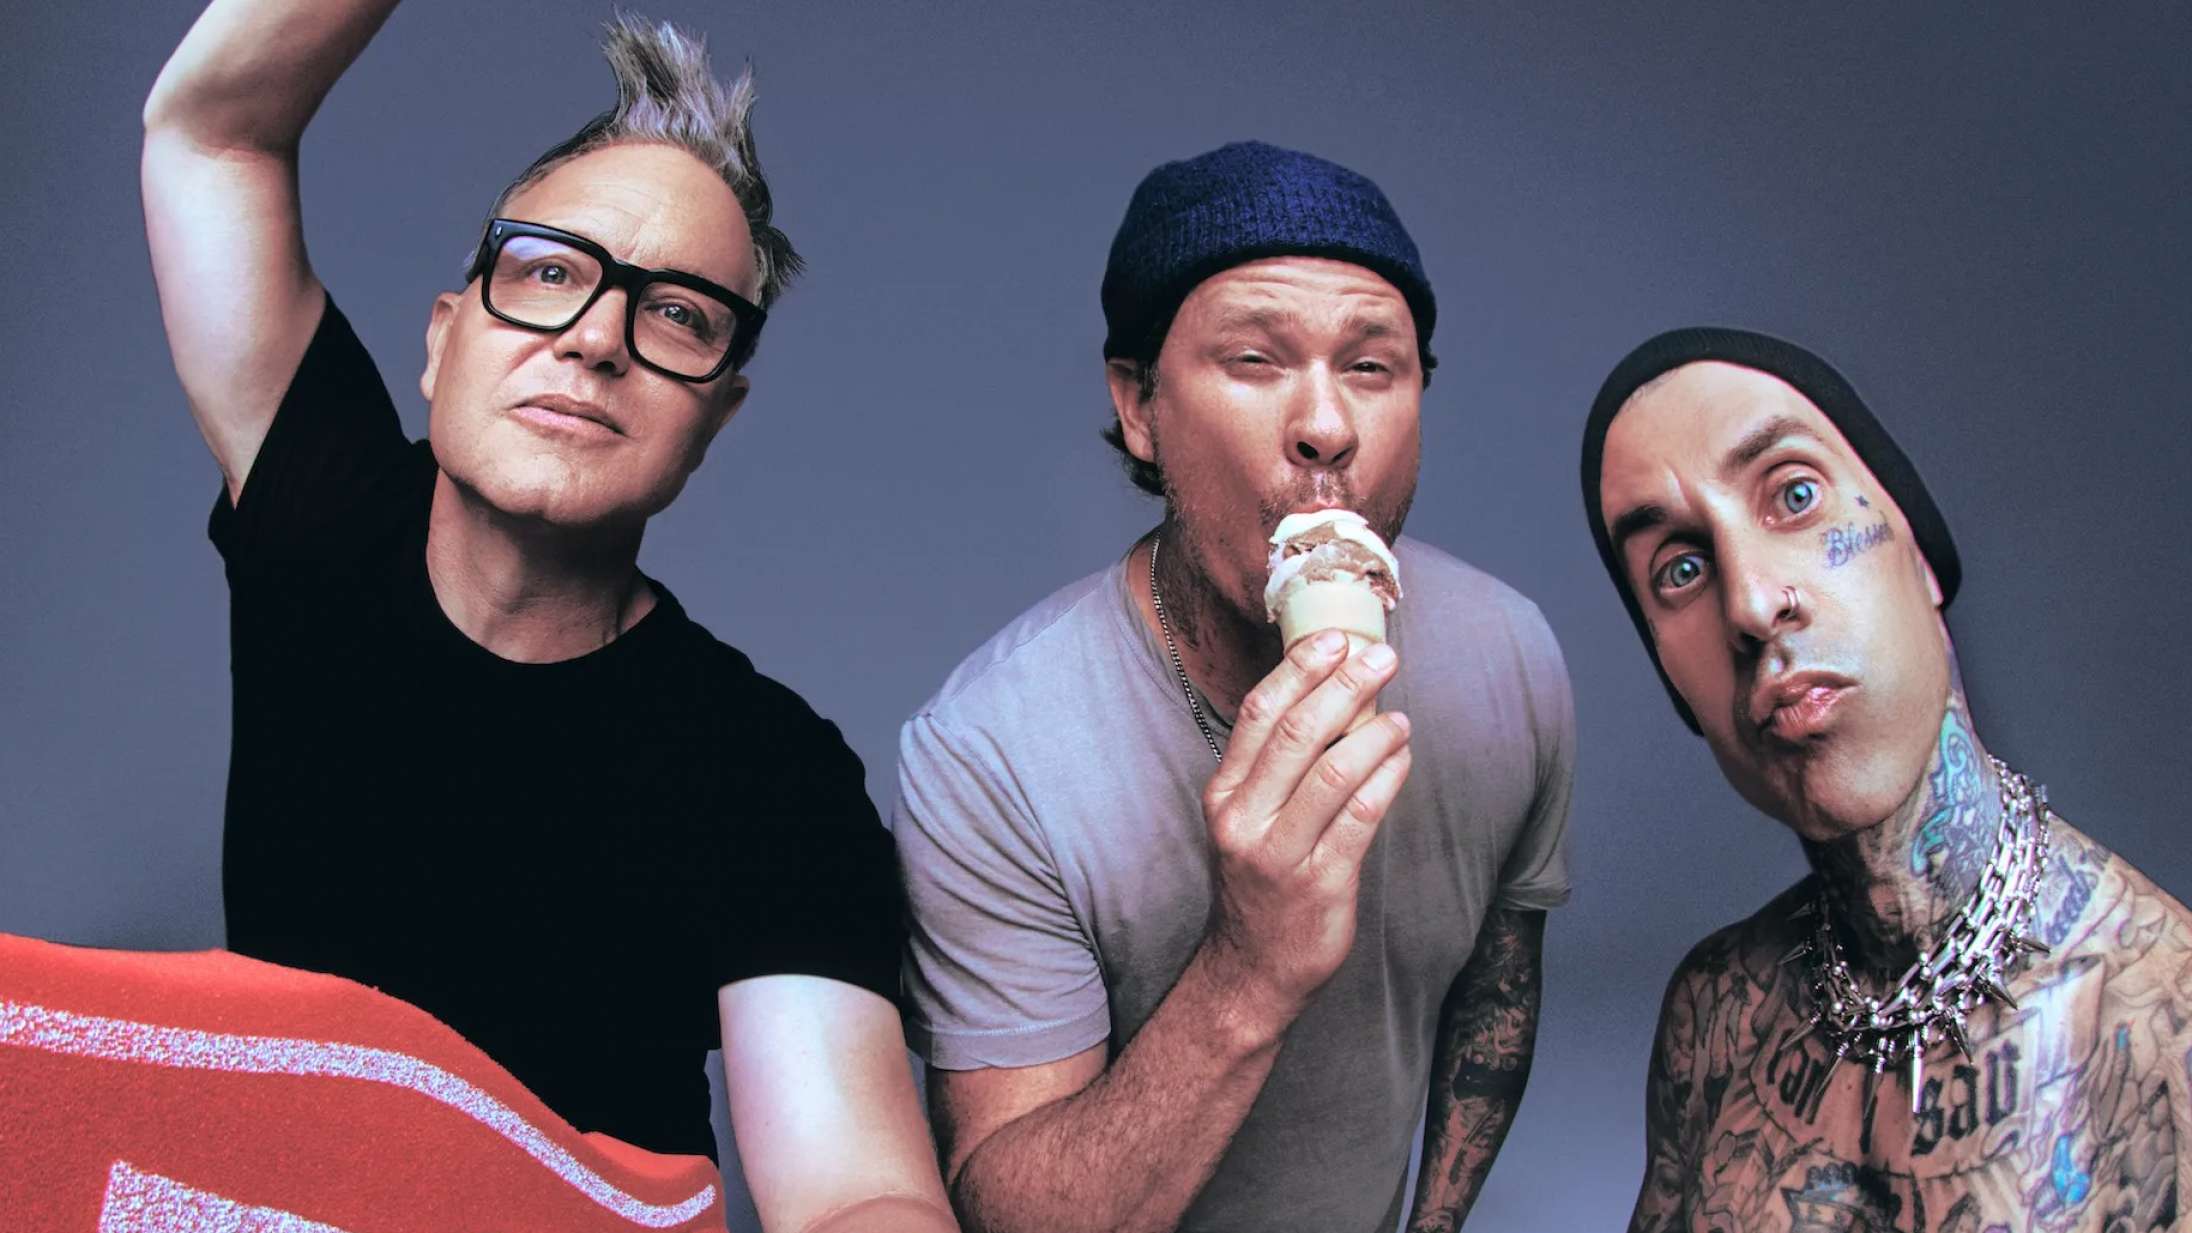 En uge inden de skal spille i Danmark: Blink-182 udskyder en række koncerter